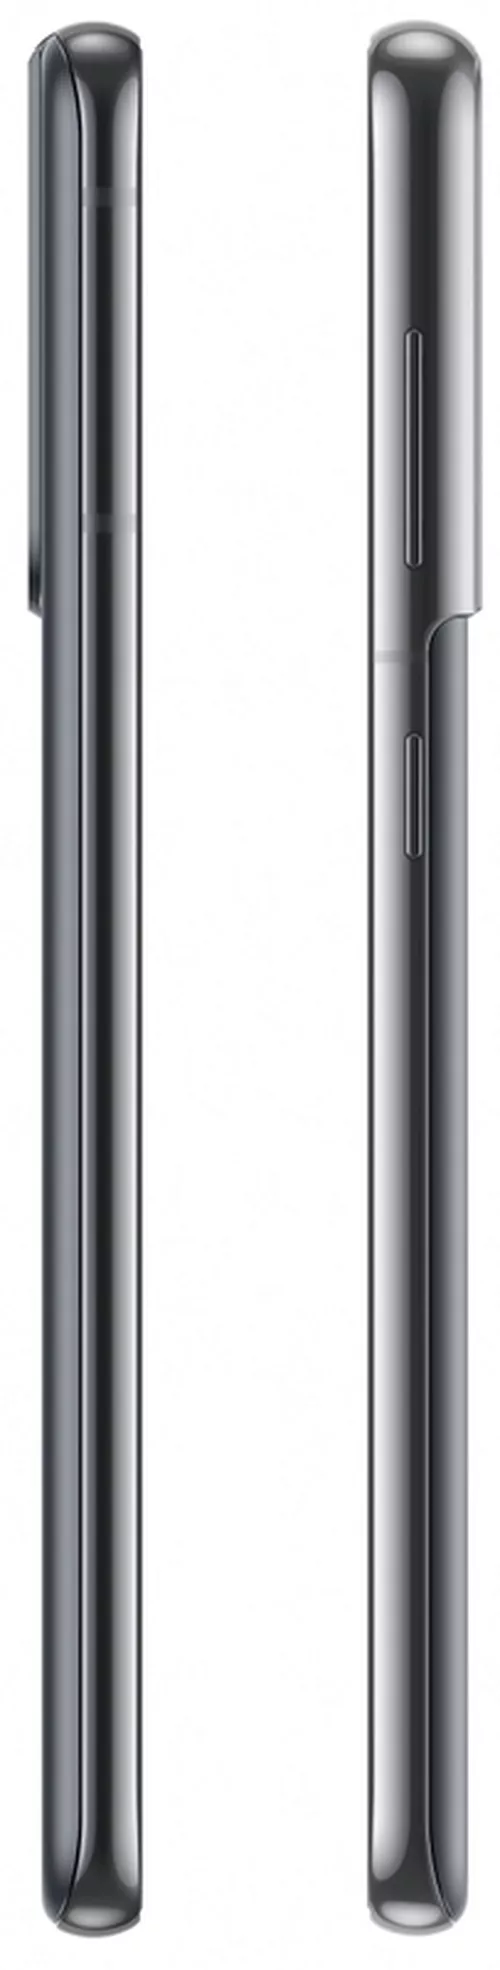 купить Смартфон Samsung G991B/128 Galaxy S21 5G Phantom Grey в Кишинёве 